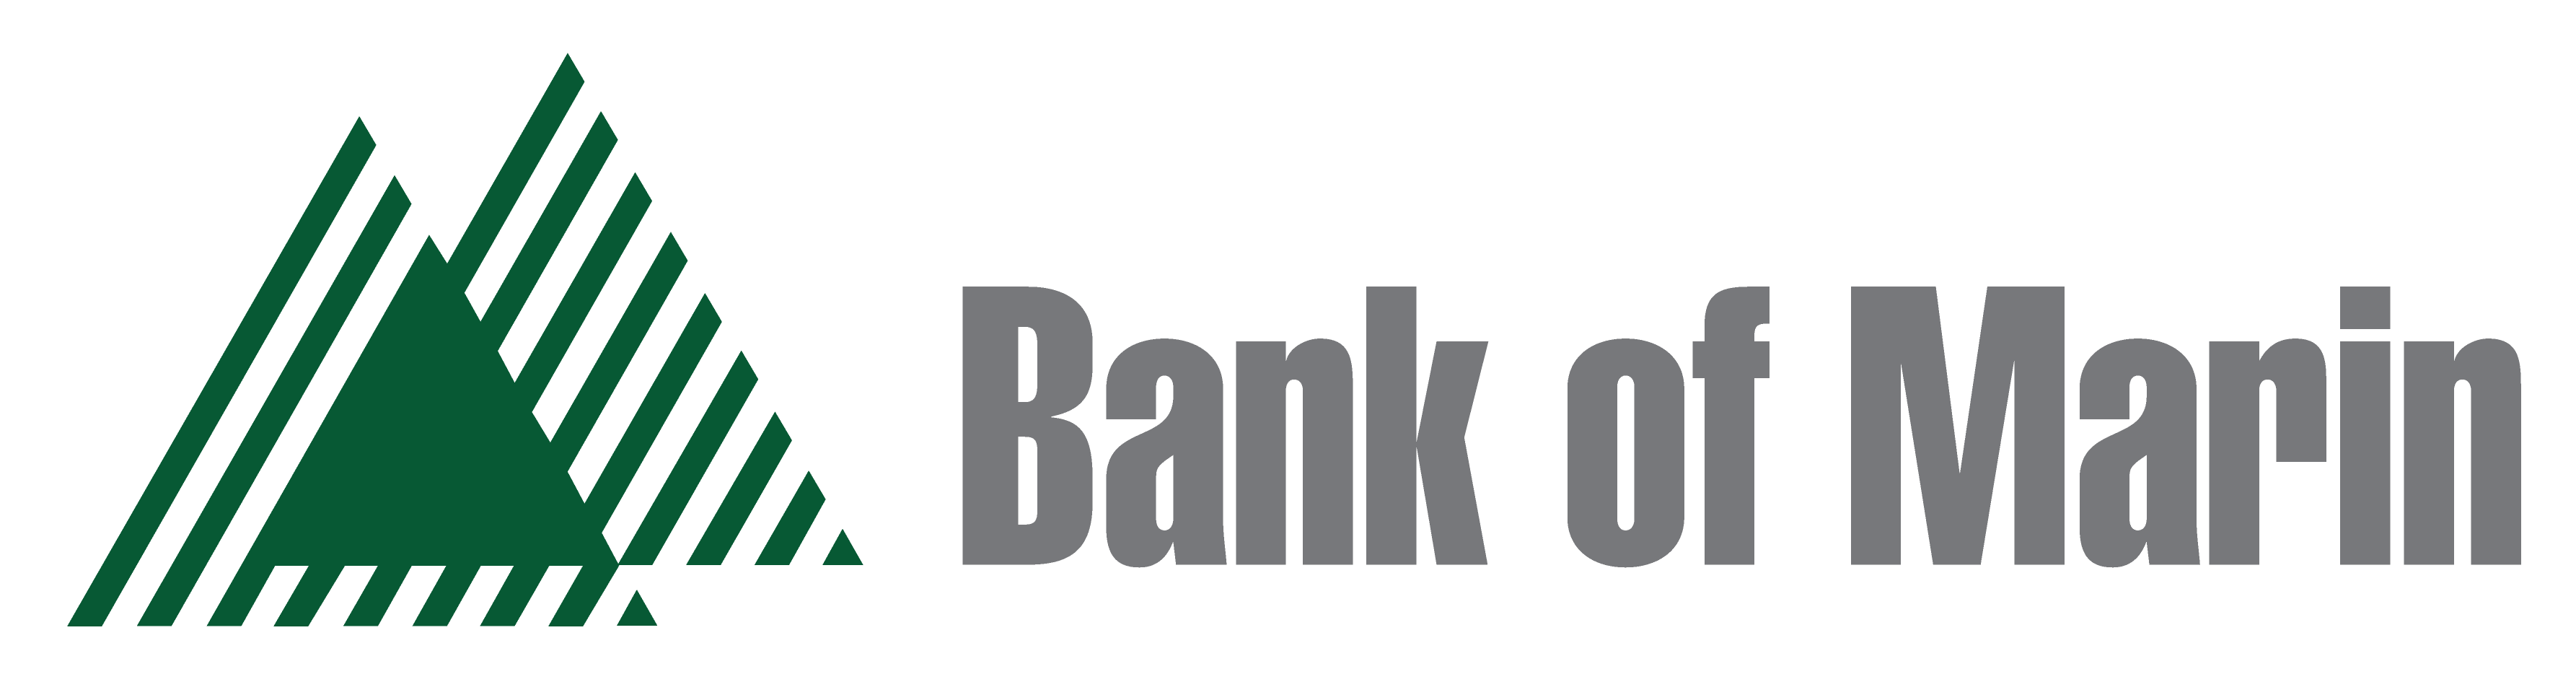 Logo for sponsor Bank of Marin